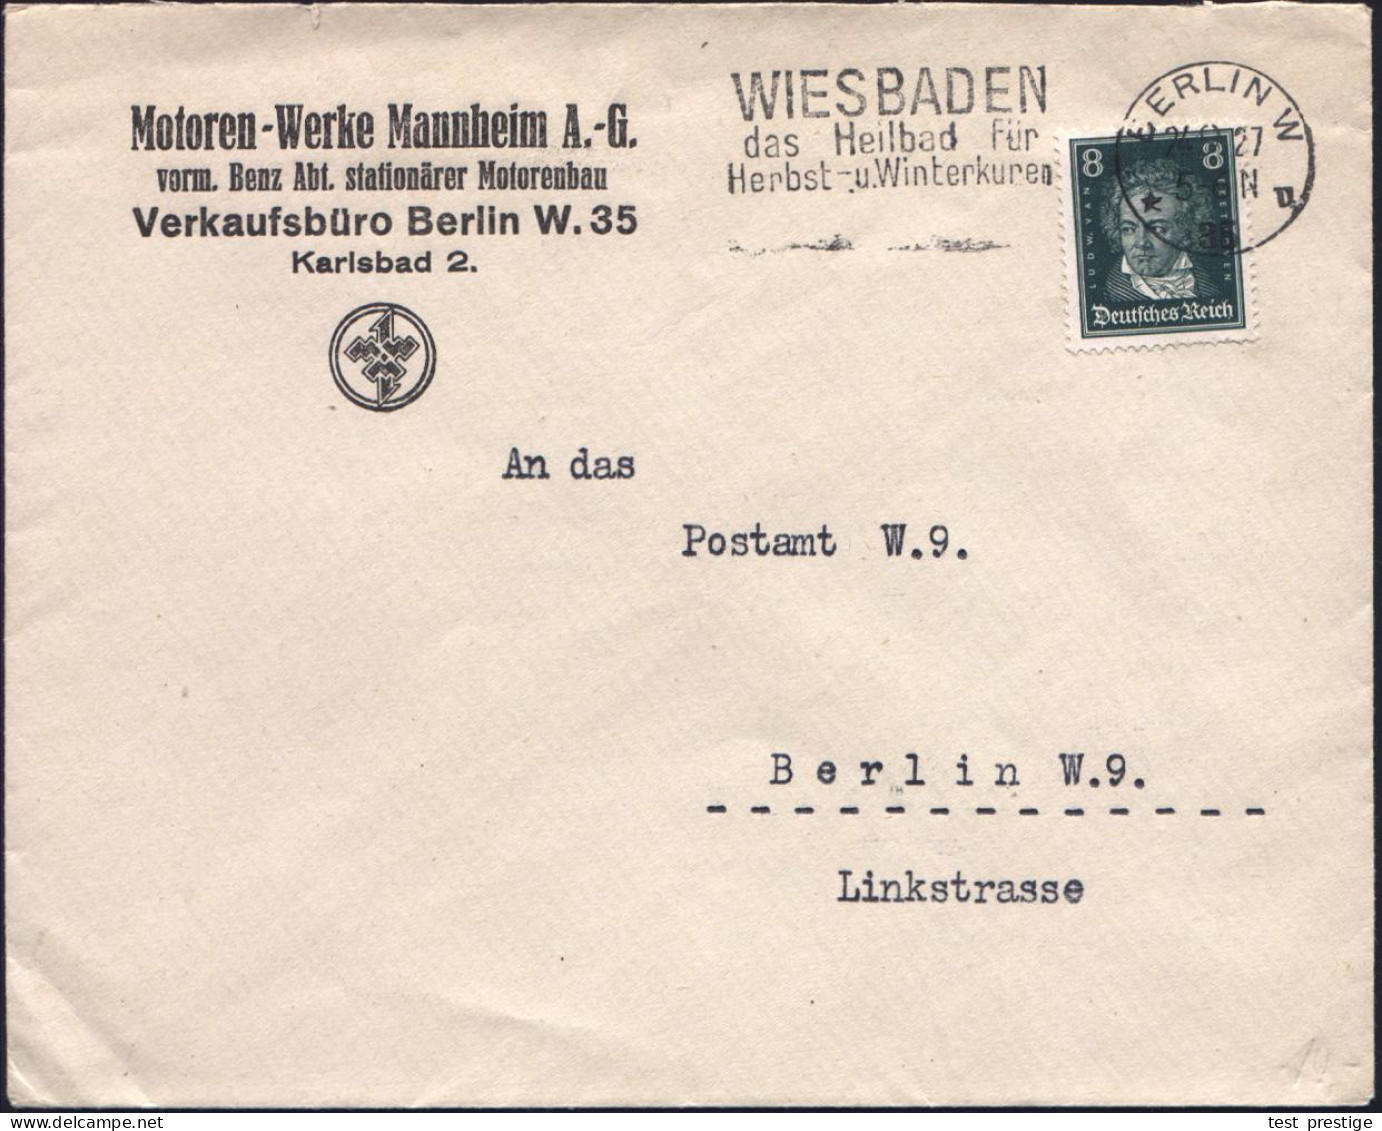 BERLIN W/ *35u/ WIESBADEN/ Das Heilbad.. 1927 (24.9.) MWSt Auf Firmen-Bf: Motoren-Werke Mannheim AG / Vorm. Benz Abt. St - KFZ